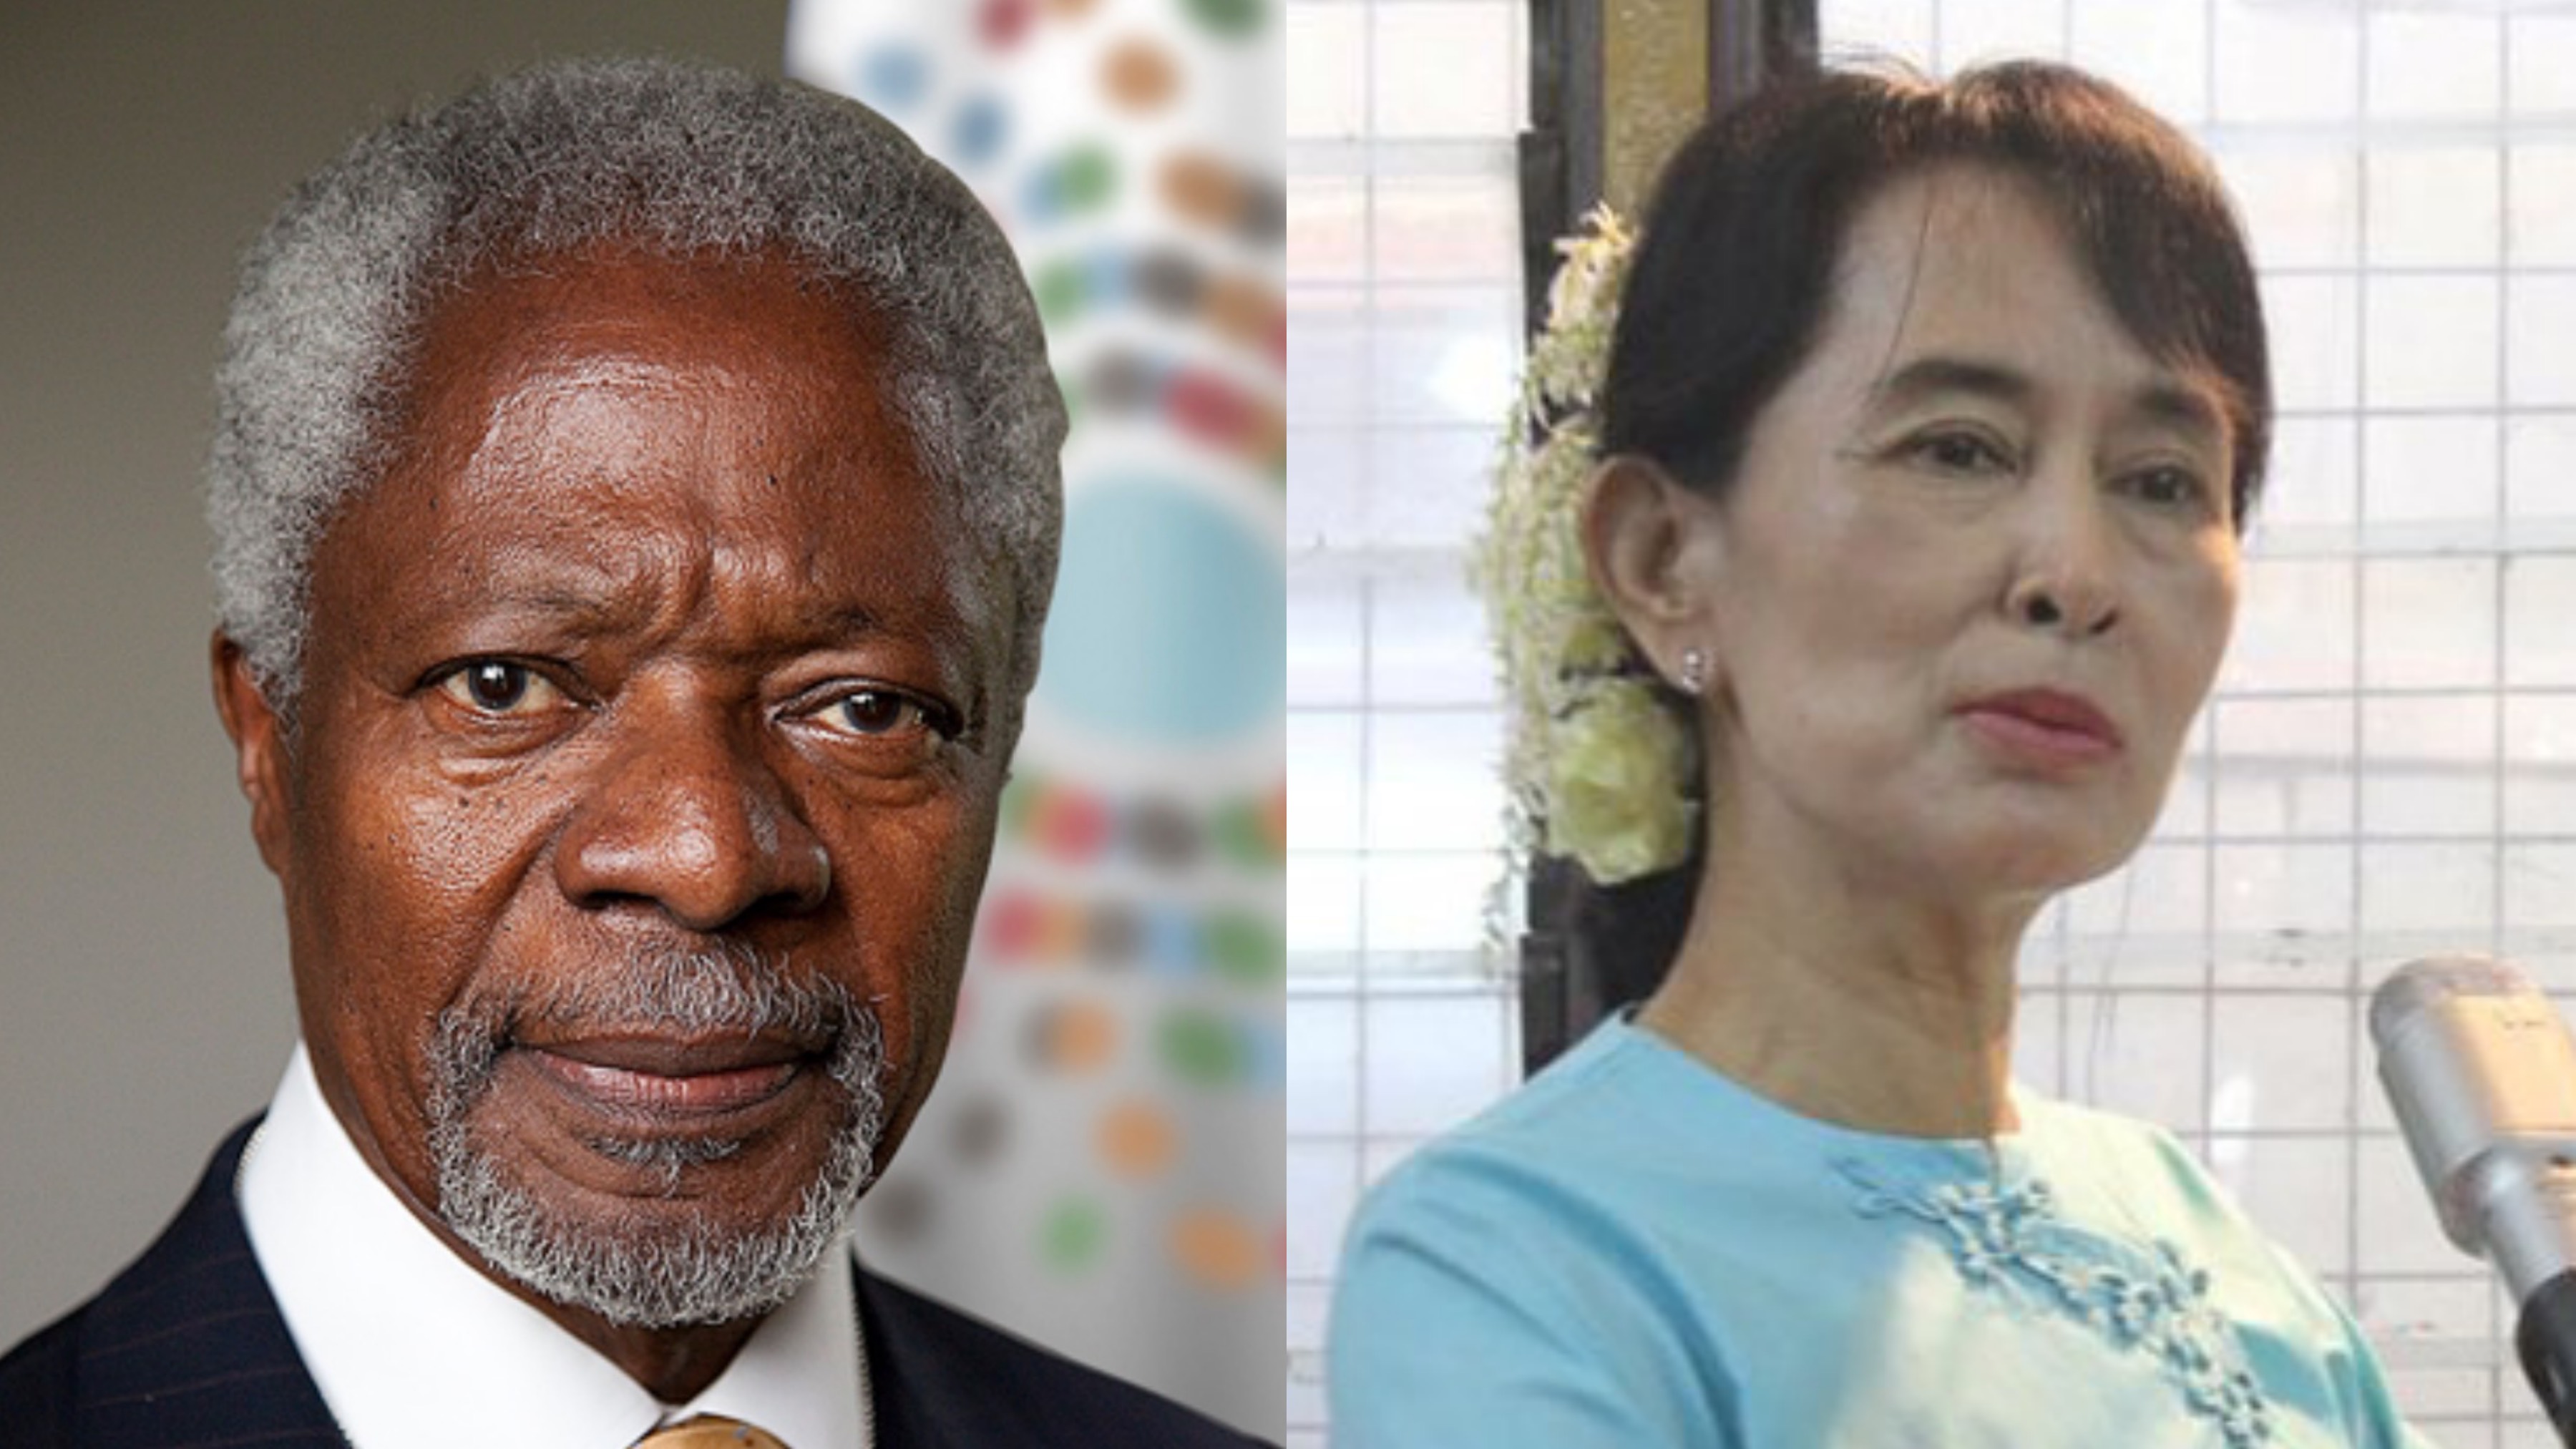 Former UN chief Kofi Annan and Myanmar’s defacto leader Aung San Suu Kyi. PHOTOS: Facebook/Kofi Annan/Aung San Suu Kyi